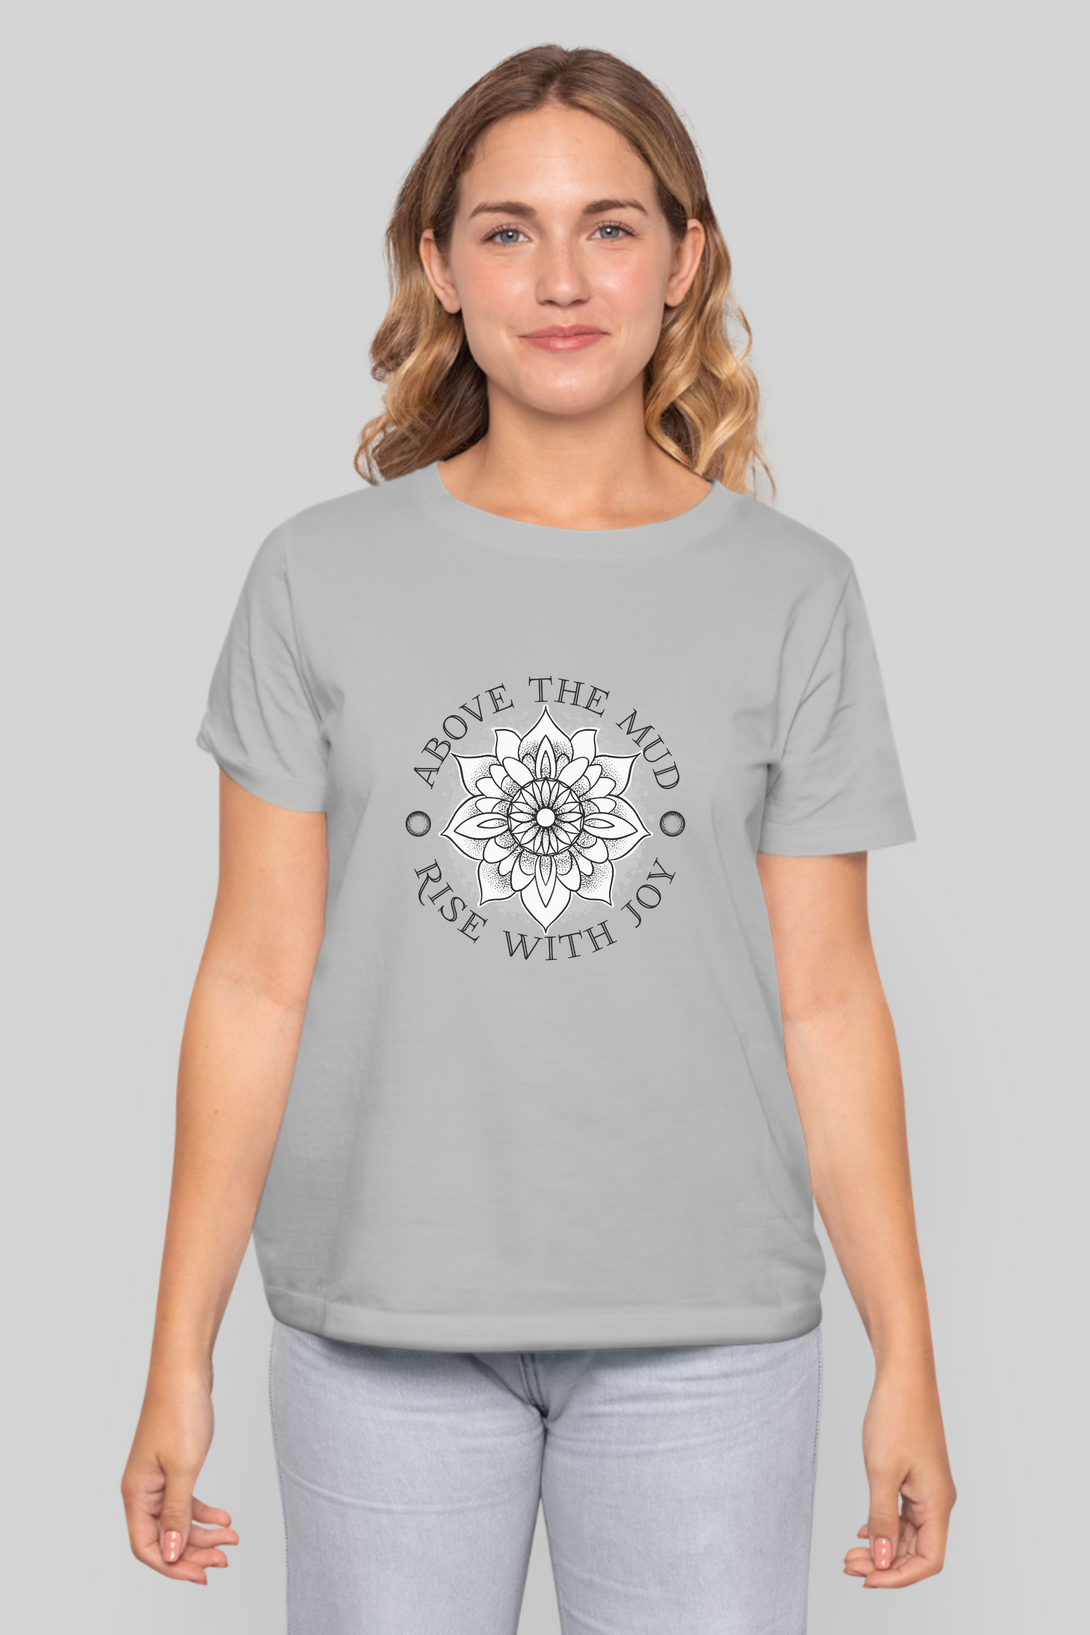 Mandala Lotus Printed T-Shirt For Women - WowWaves - 7